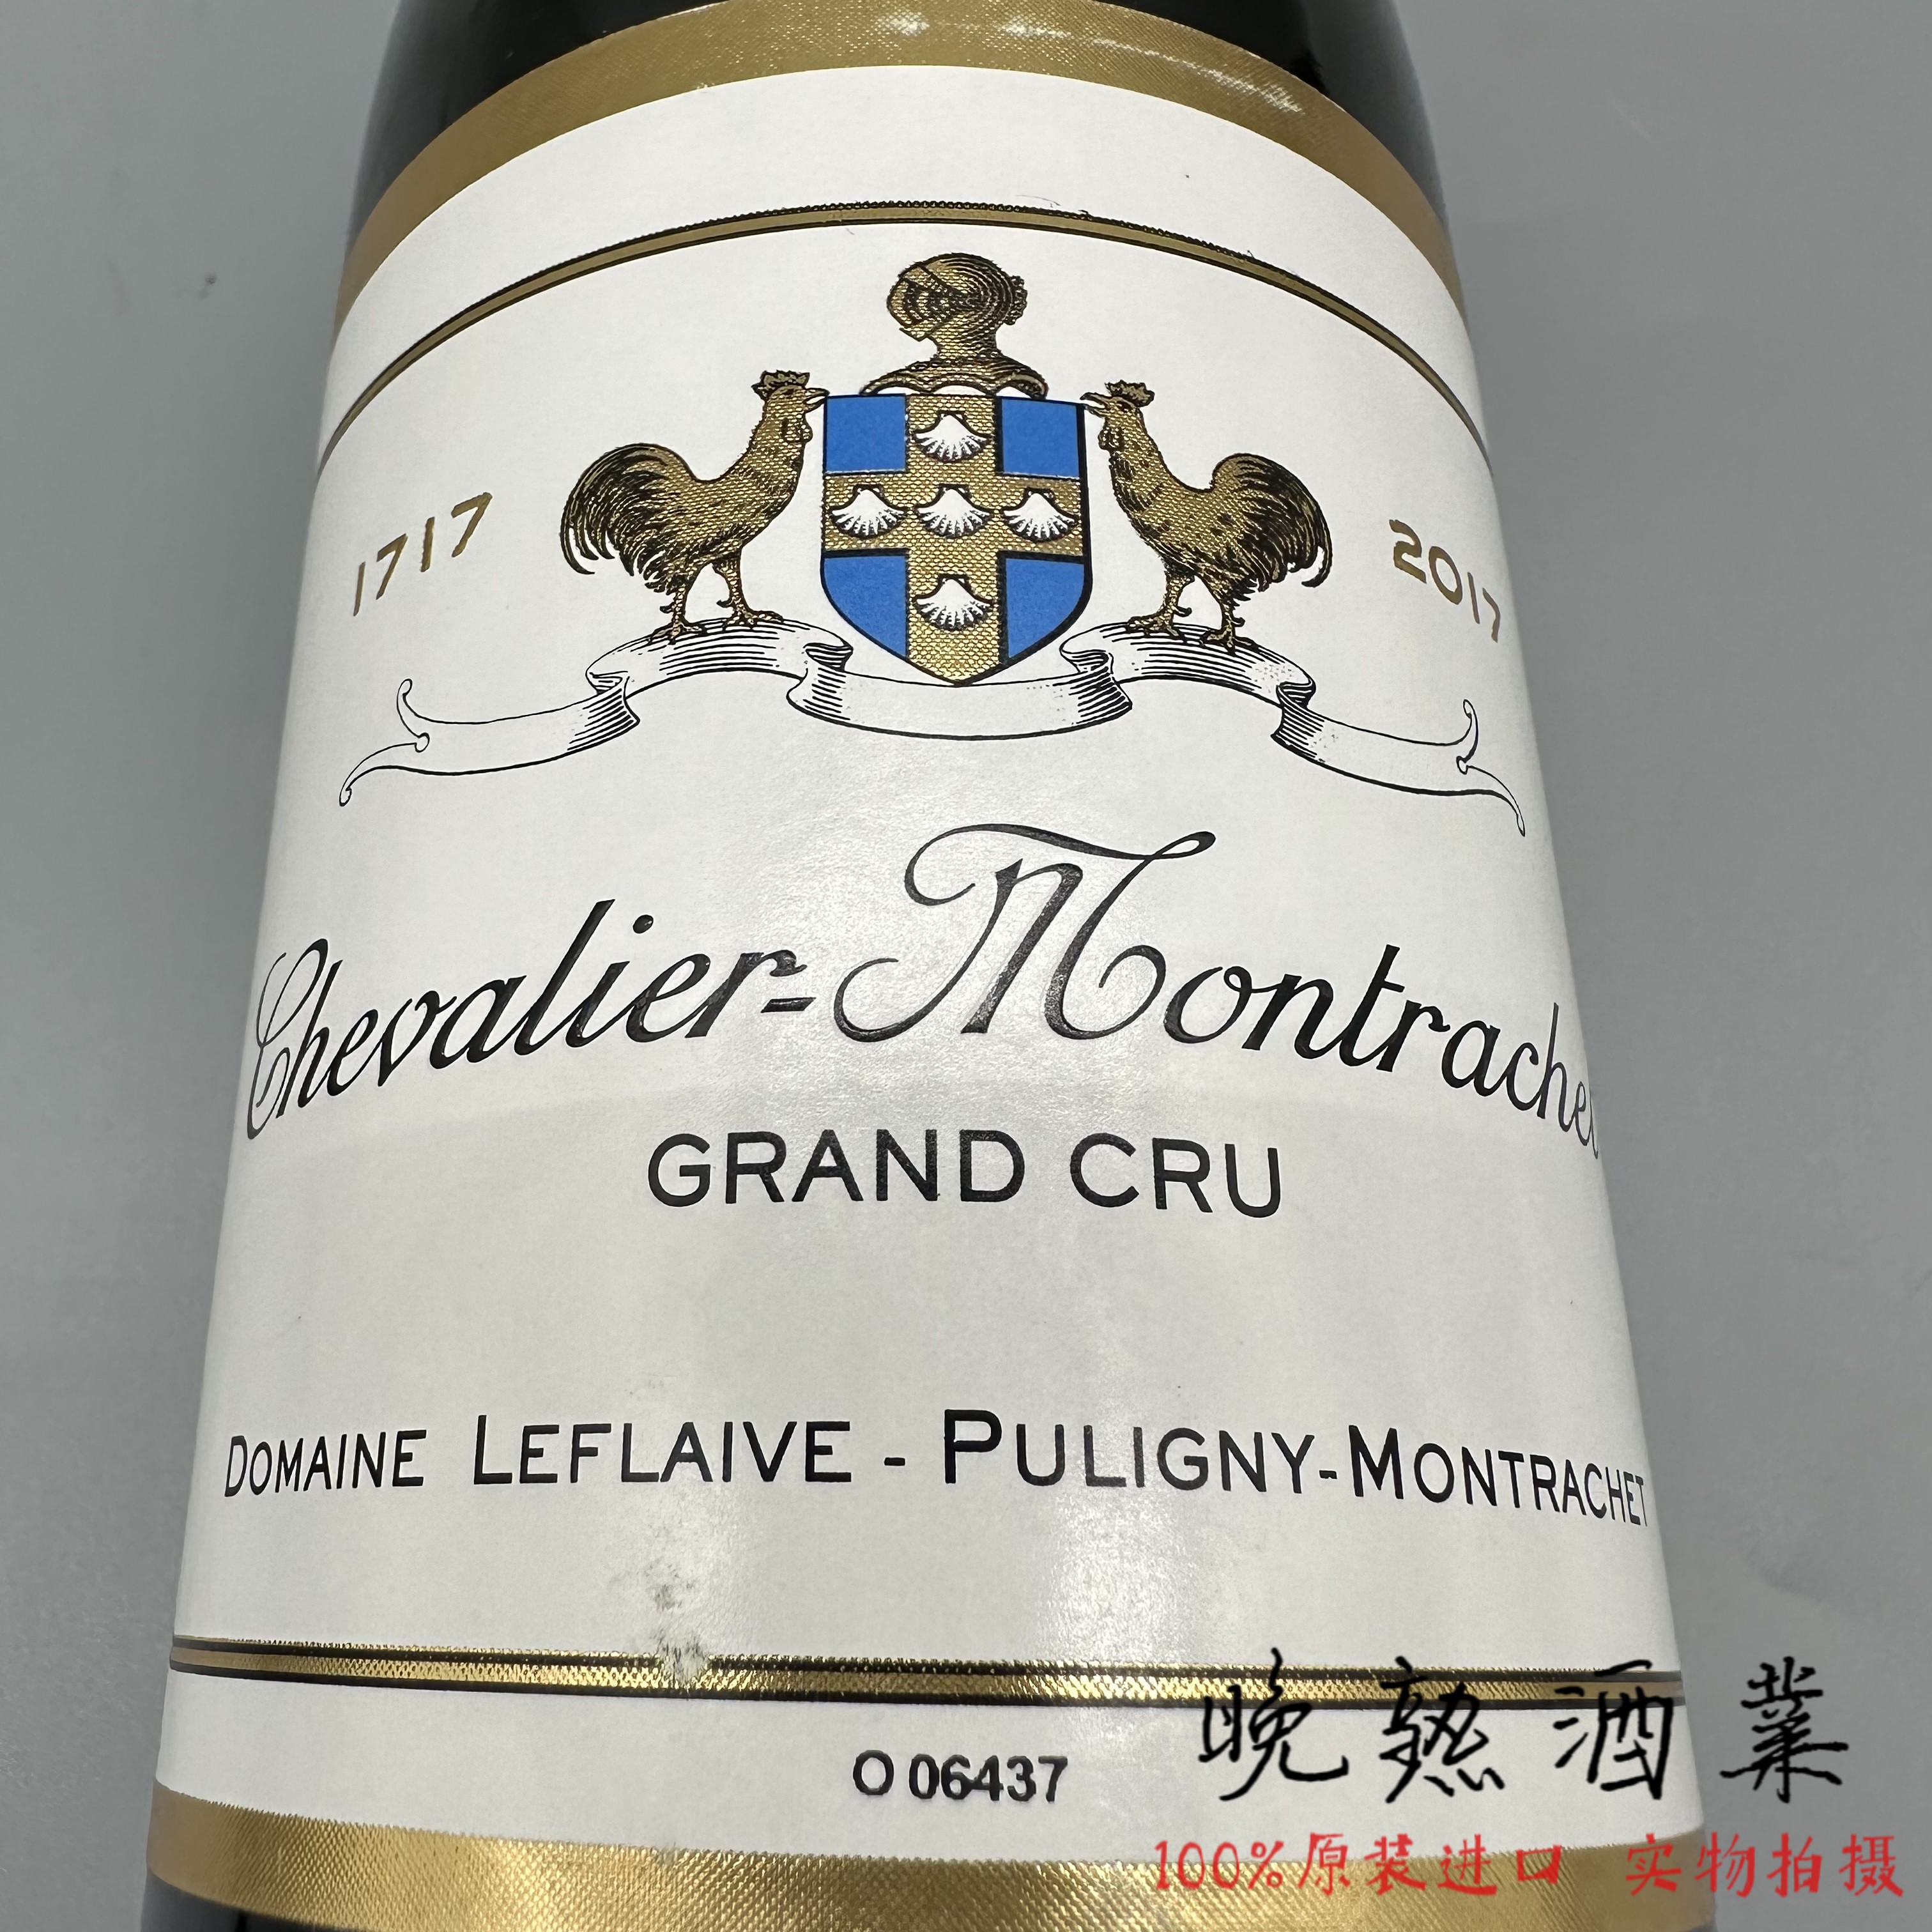 纪念版100周年 勃艮第双鸡勒弗莱酒庄骑士-蒙哈榭特级园白葡萄酒